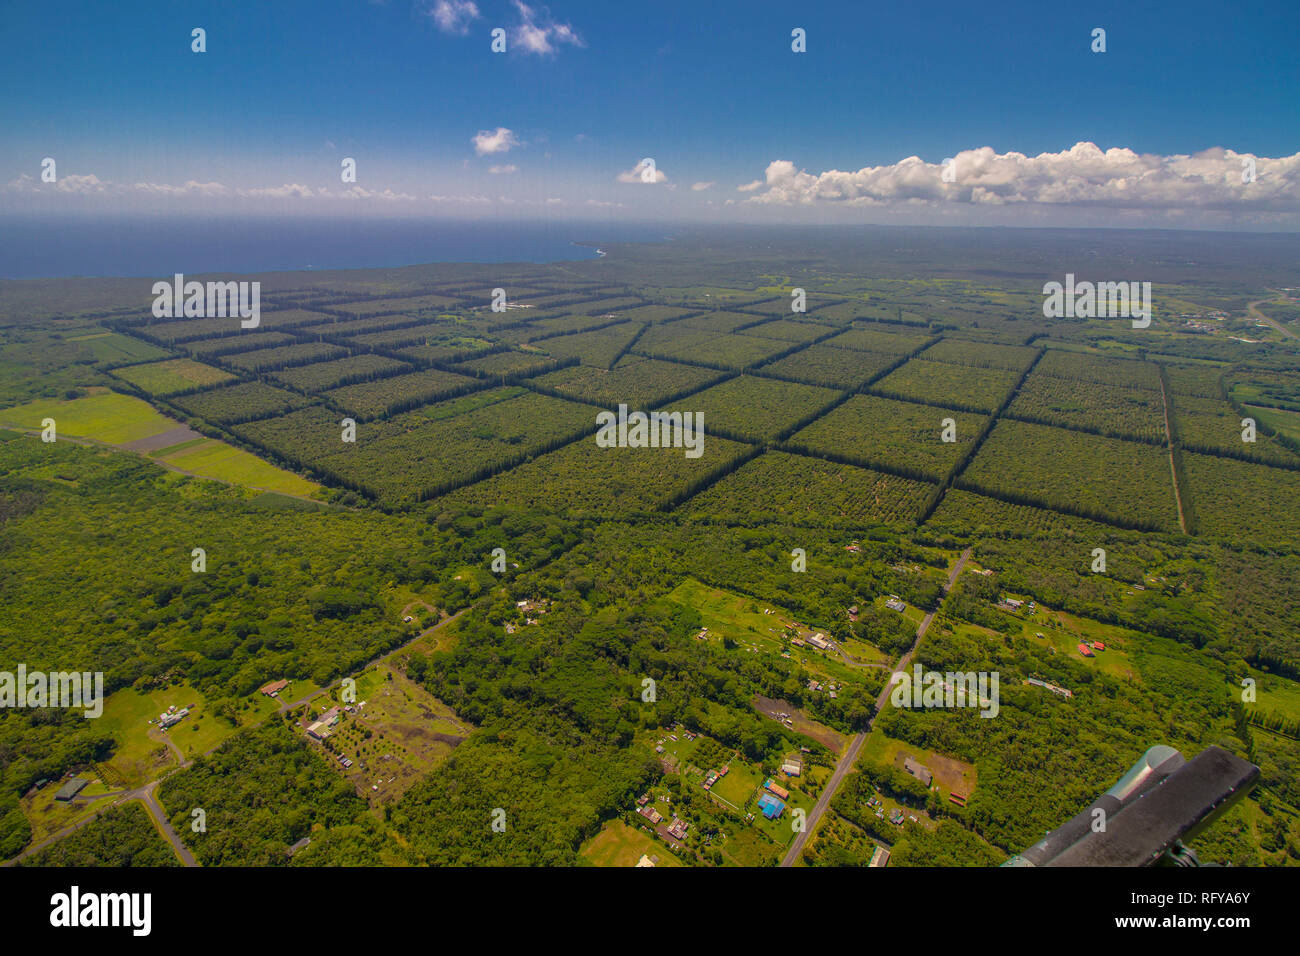 Vista aérea de hilo, uno de los poblados más grandes en Big Island, Hawai Foto de stock